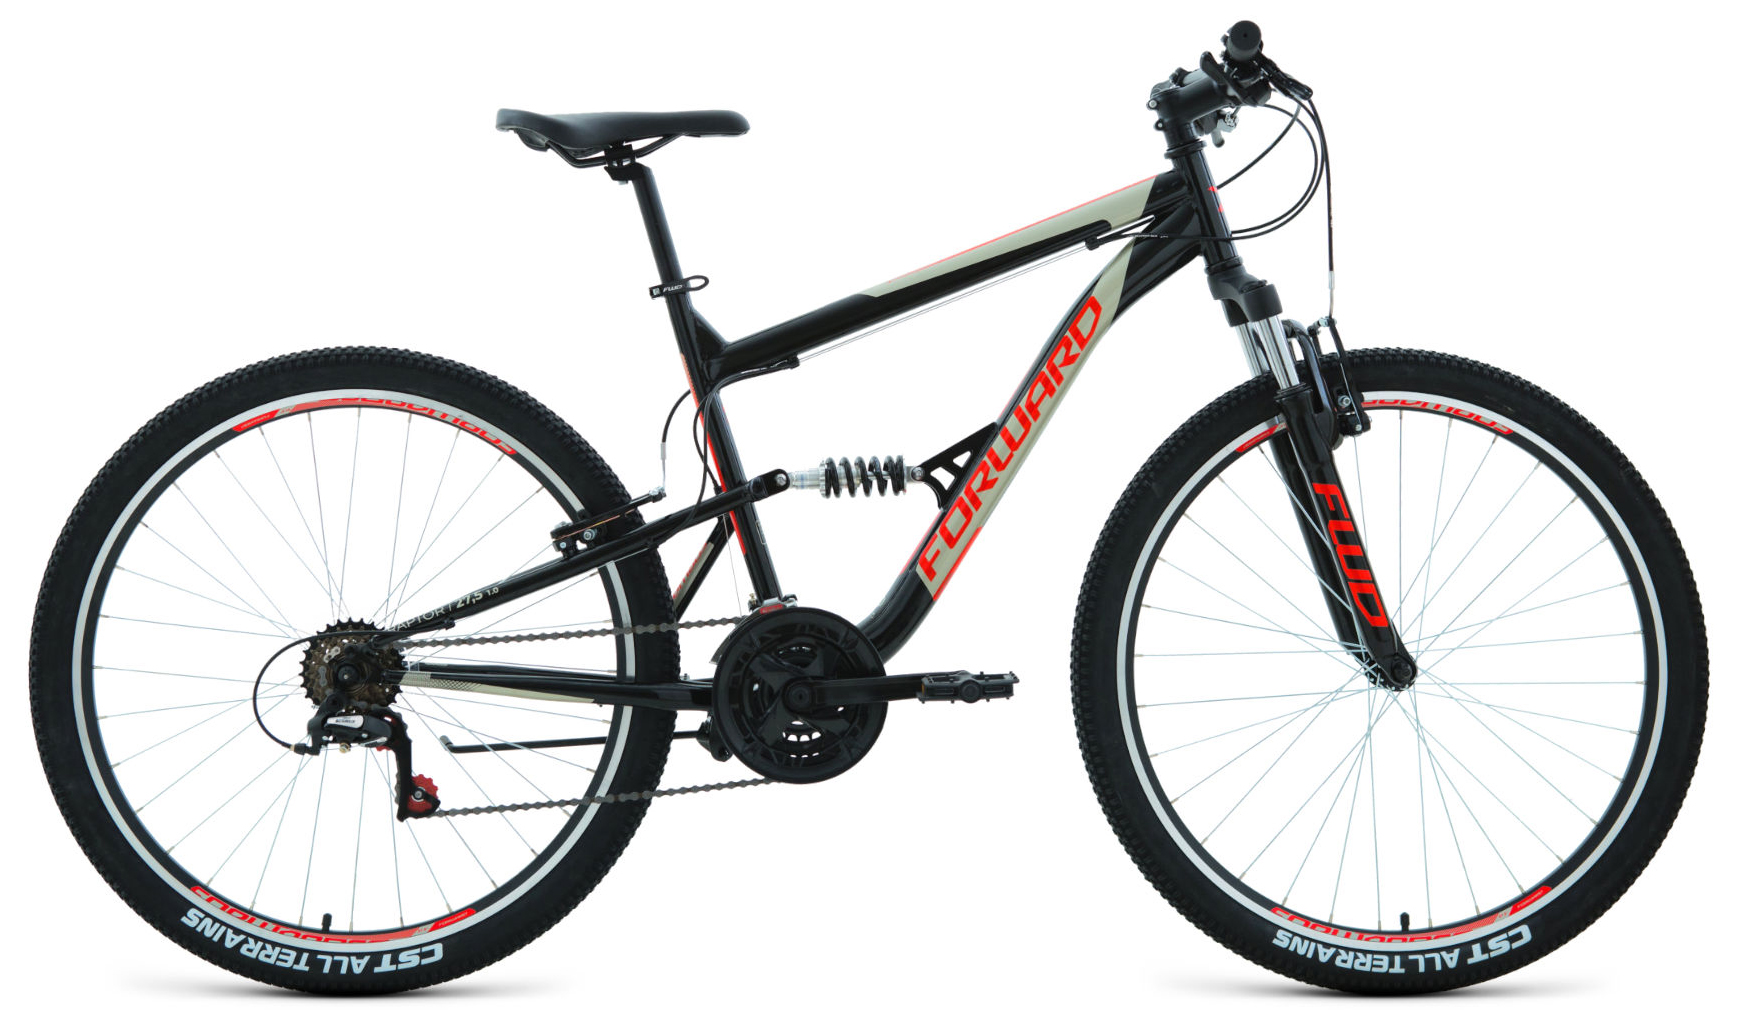  Отзывы о Двухподвесном велосипеде Forward Raptor 27.5 1.0 2020